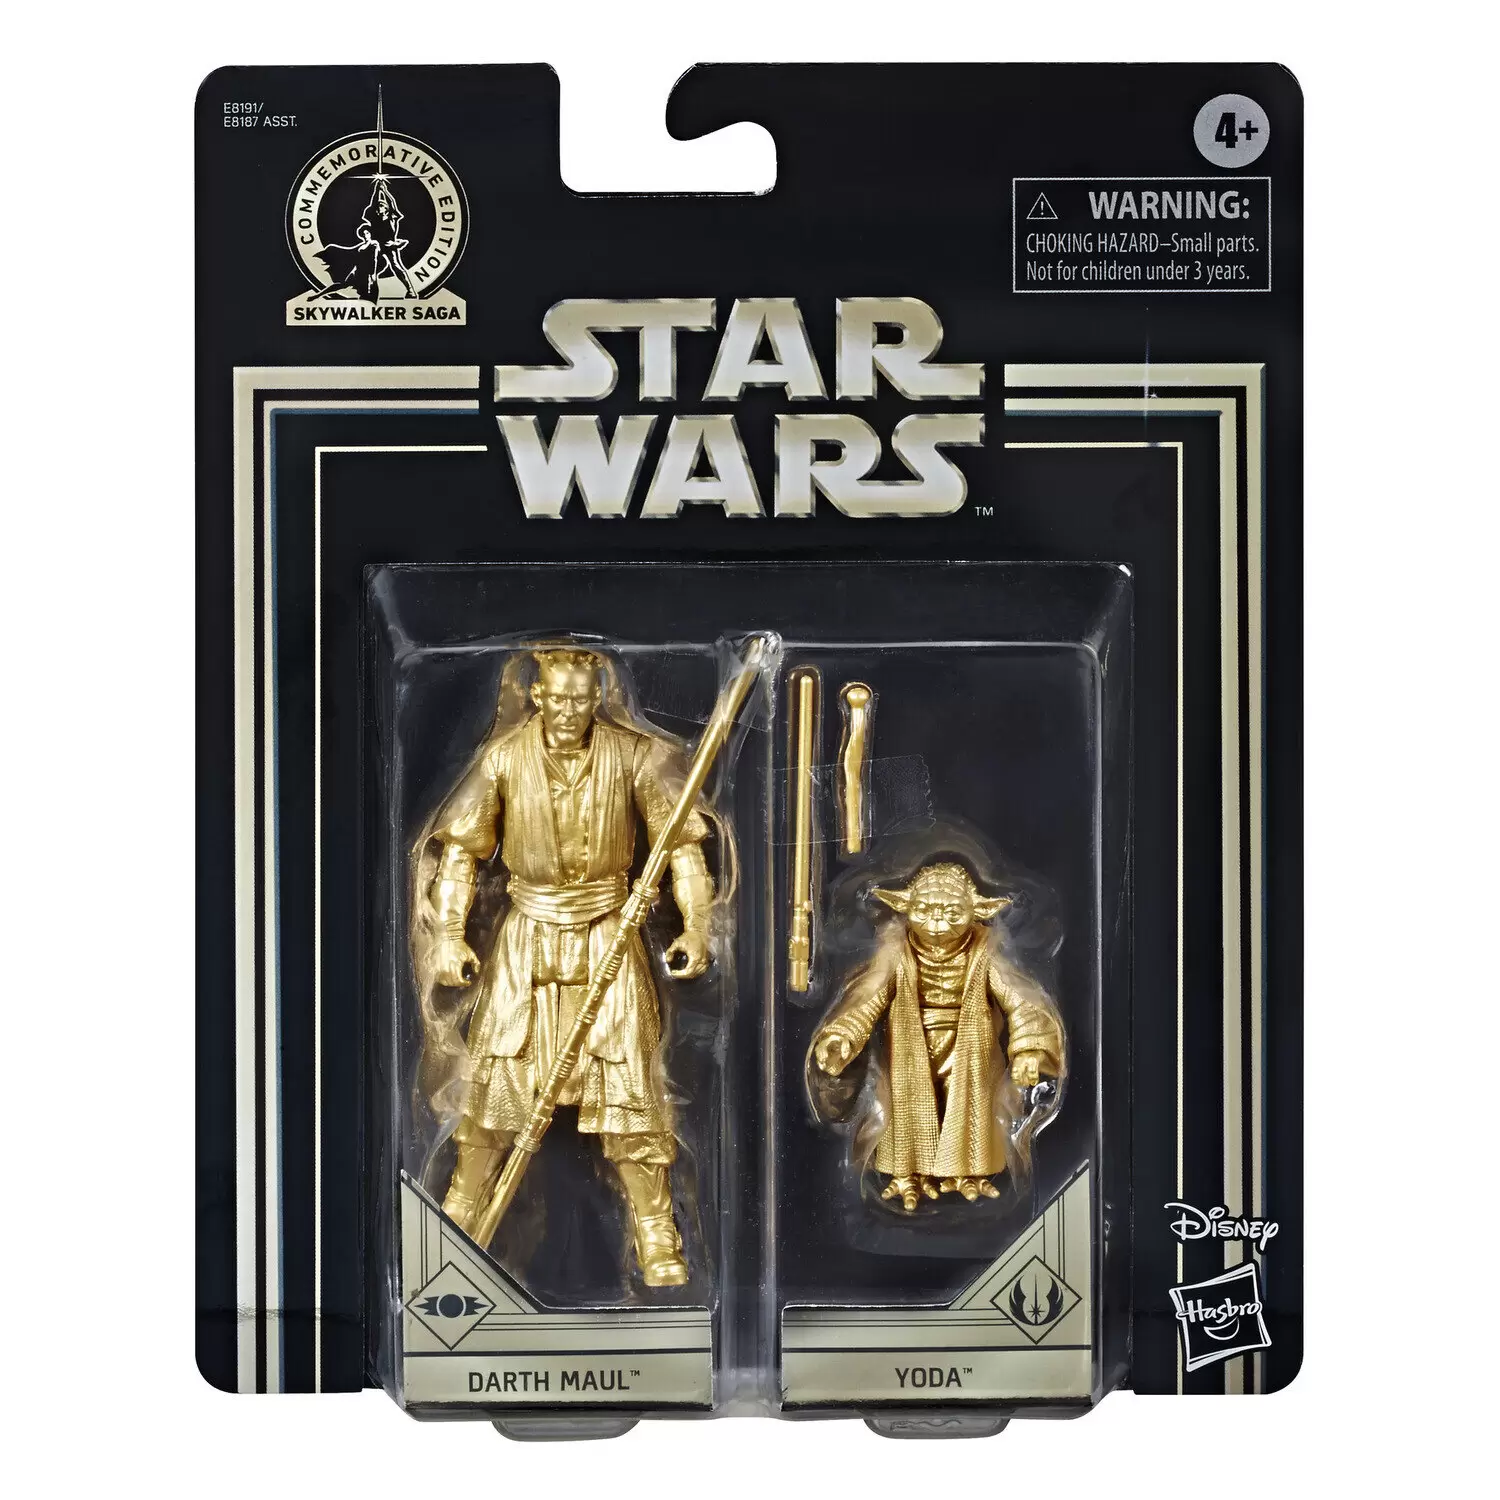 Skywalker Saga Commemorative Edition - Darth Maul and Yoda